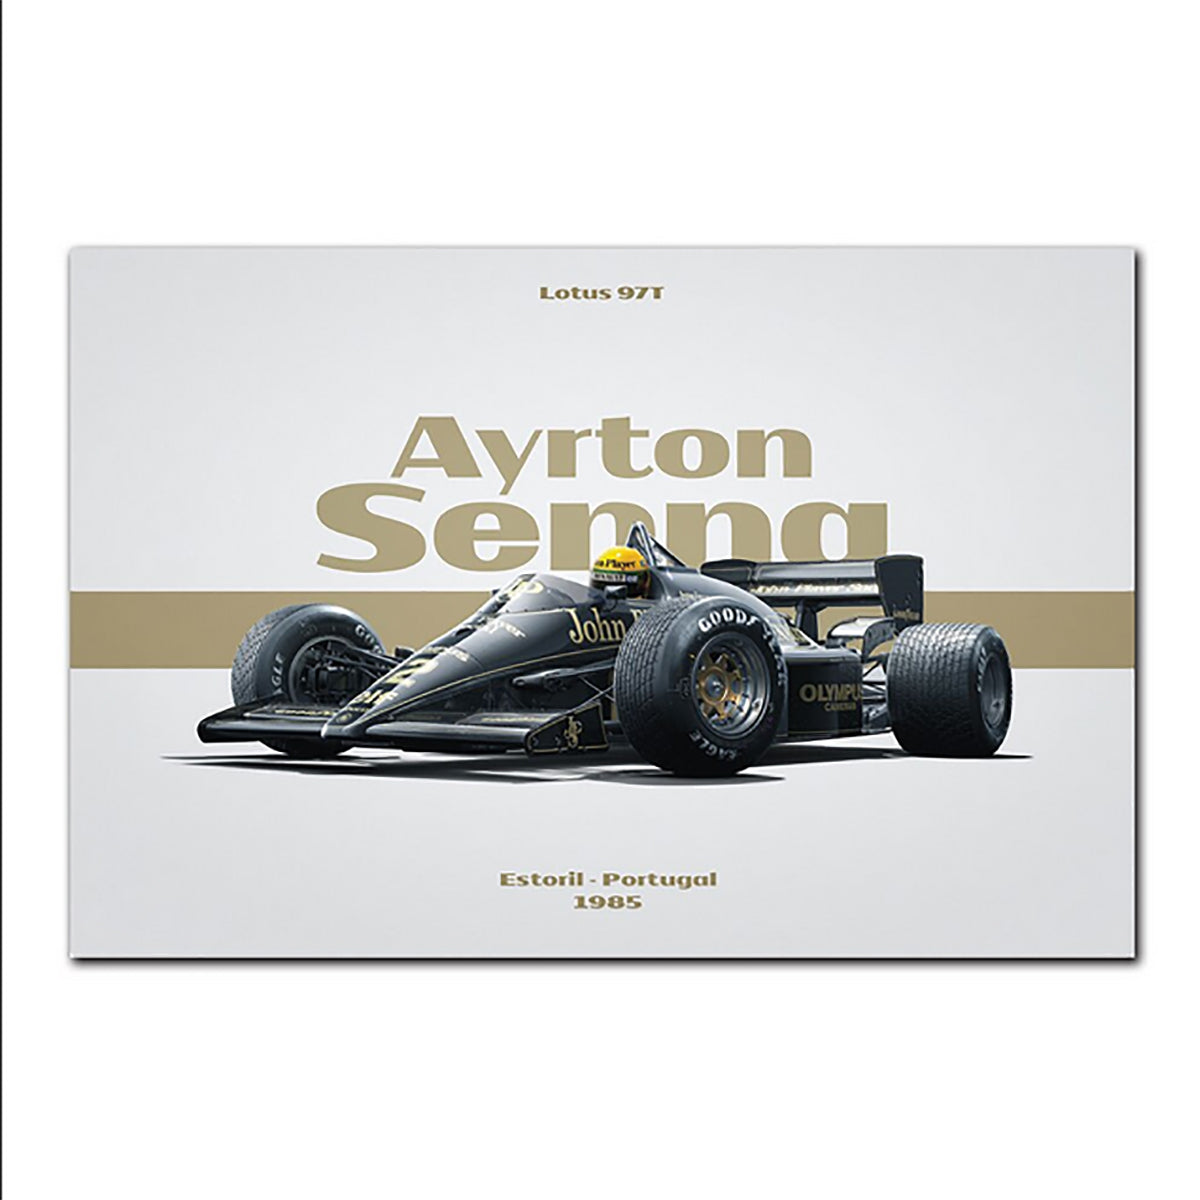 TPFLiving Poster Leinwand / Formel 1 2022 - Pilot - Rennfahrer - Ayrton Senna Impressionen / Verschiedene Größen - OHNE Rahmen - Modell SY739